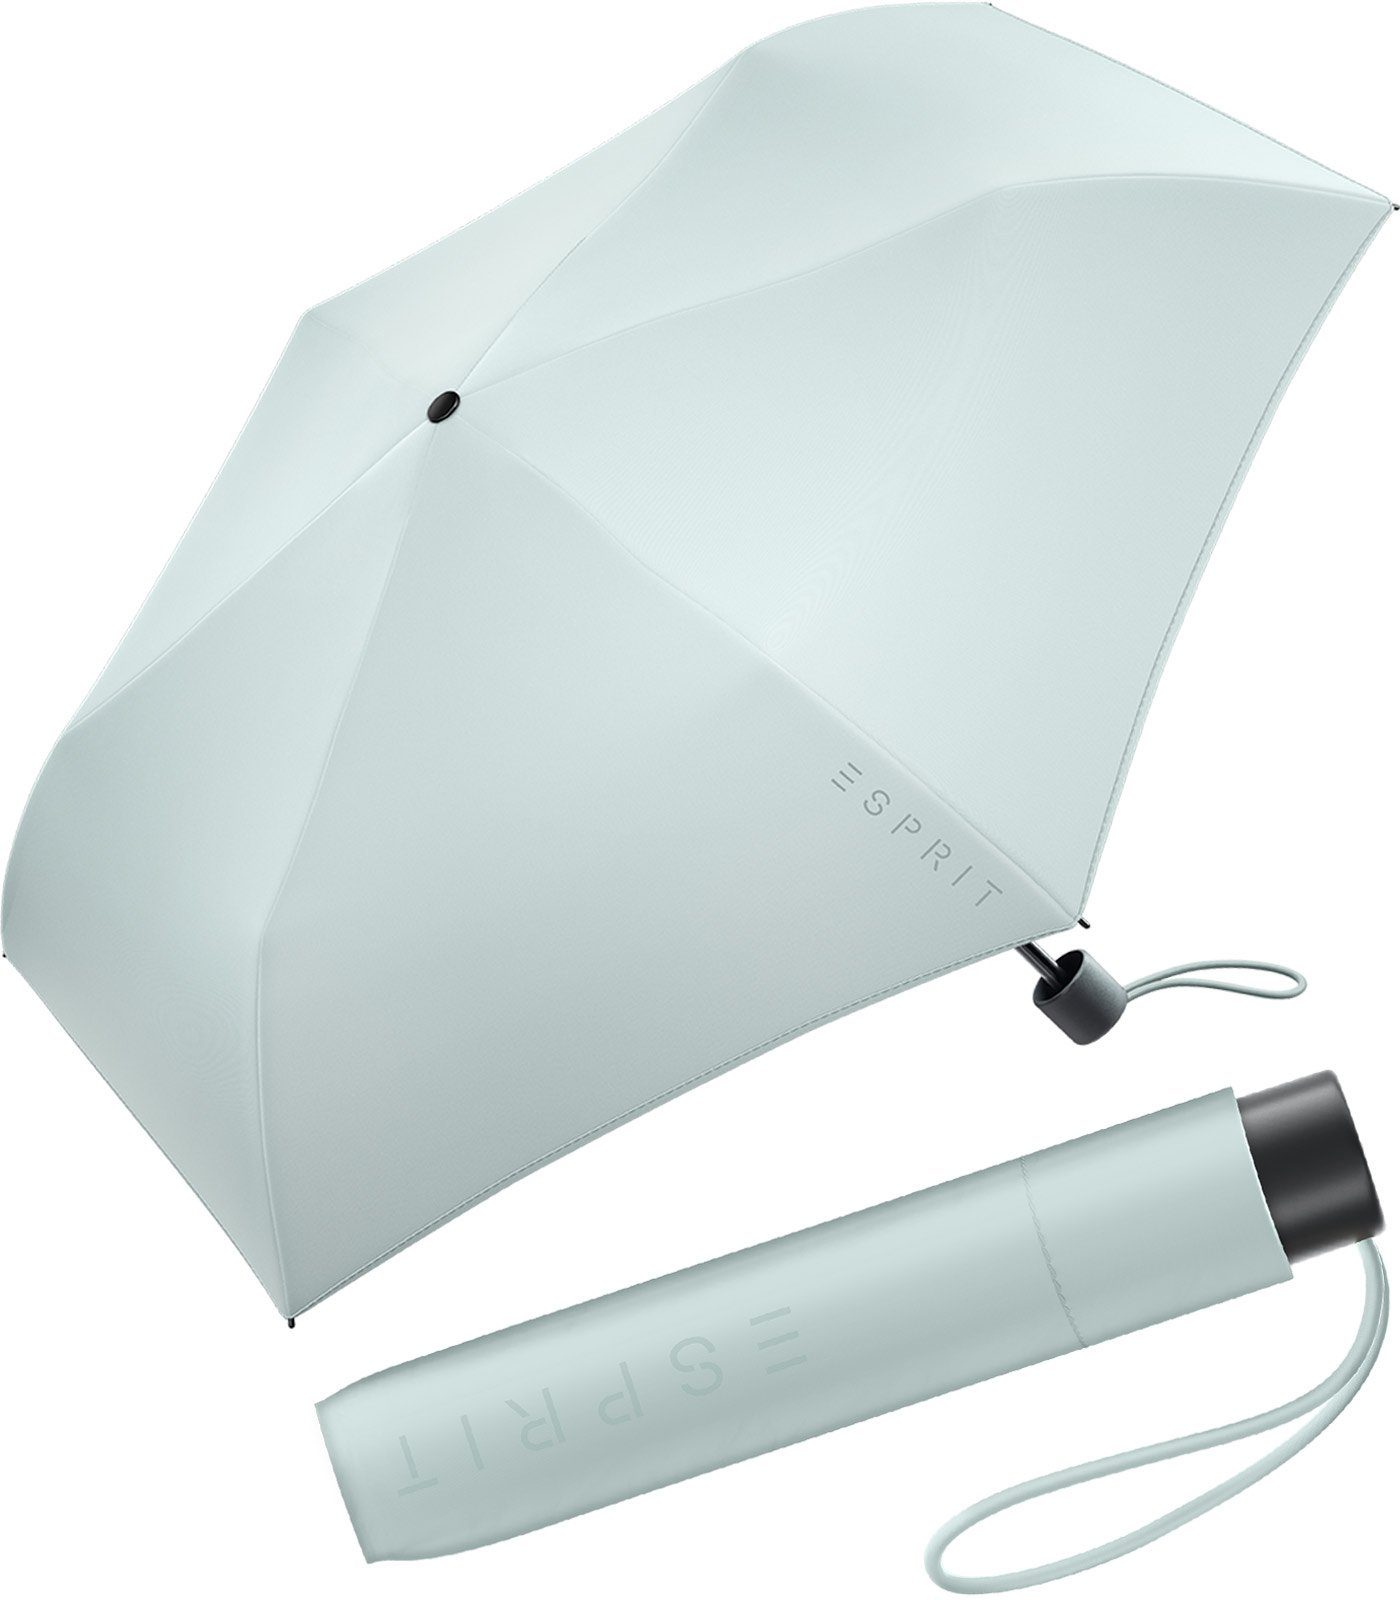 Esprit Taschenregenschirm Mini Regenschirm Damen Slimline FJ 2022, sehr leicht, in den neuen Trendfarben graublau